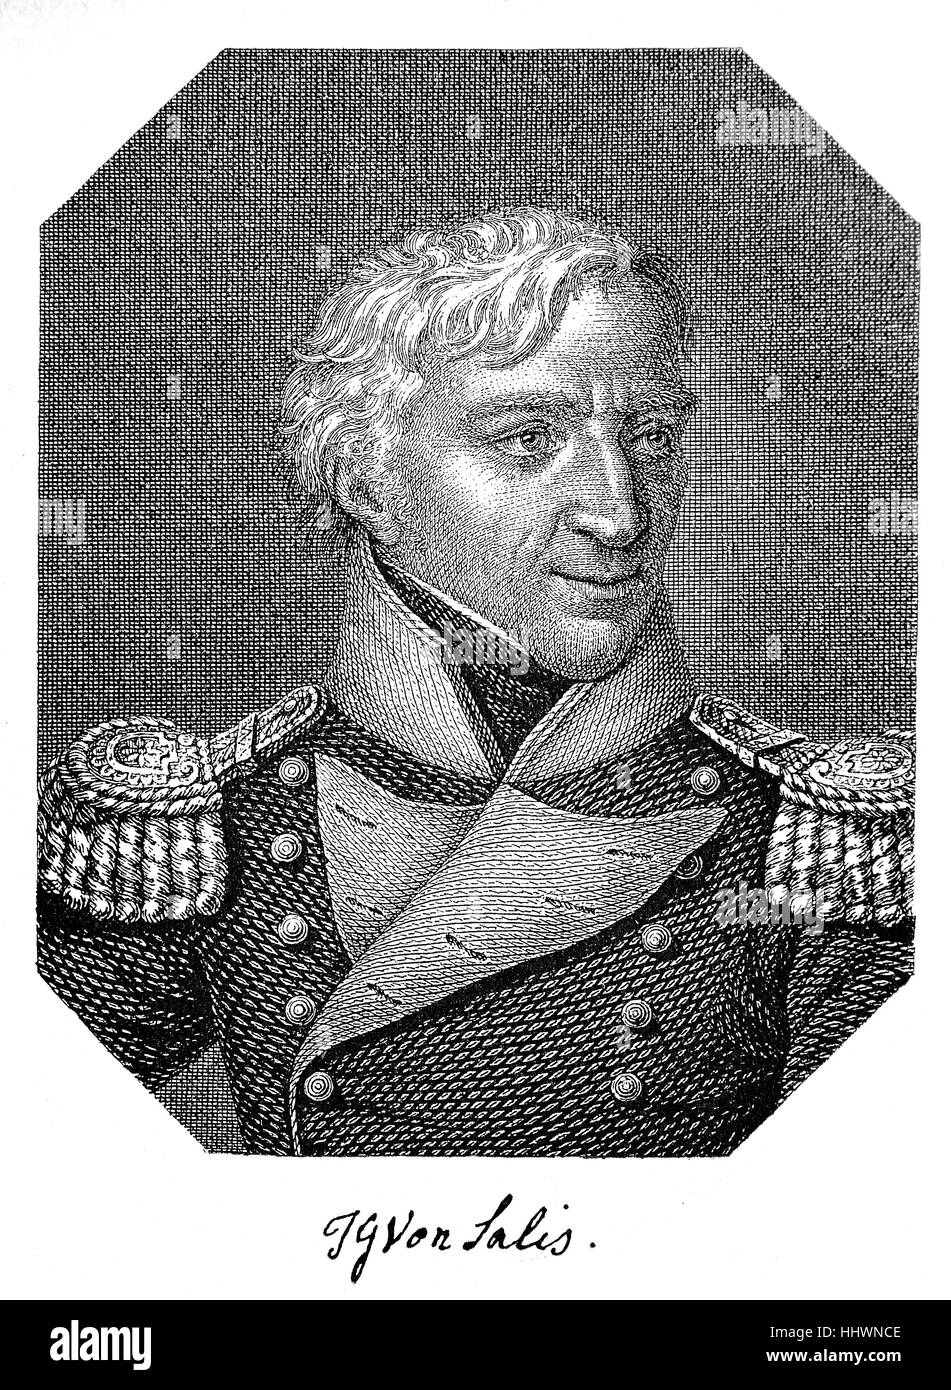 Johann Gaudenz Gubert Graf und Freiherr von Salis-Seewis, Malans, 26 dicembre 1762; Malans, 29 gennaio 1834, è stato poeta svizzero, immagine storica o illustrazione, pubblicato 1890, digitale migliorato Foto Stock